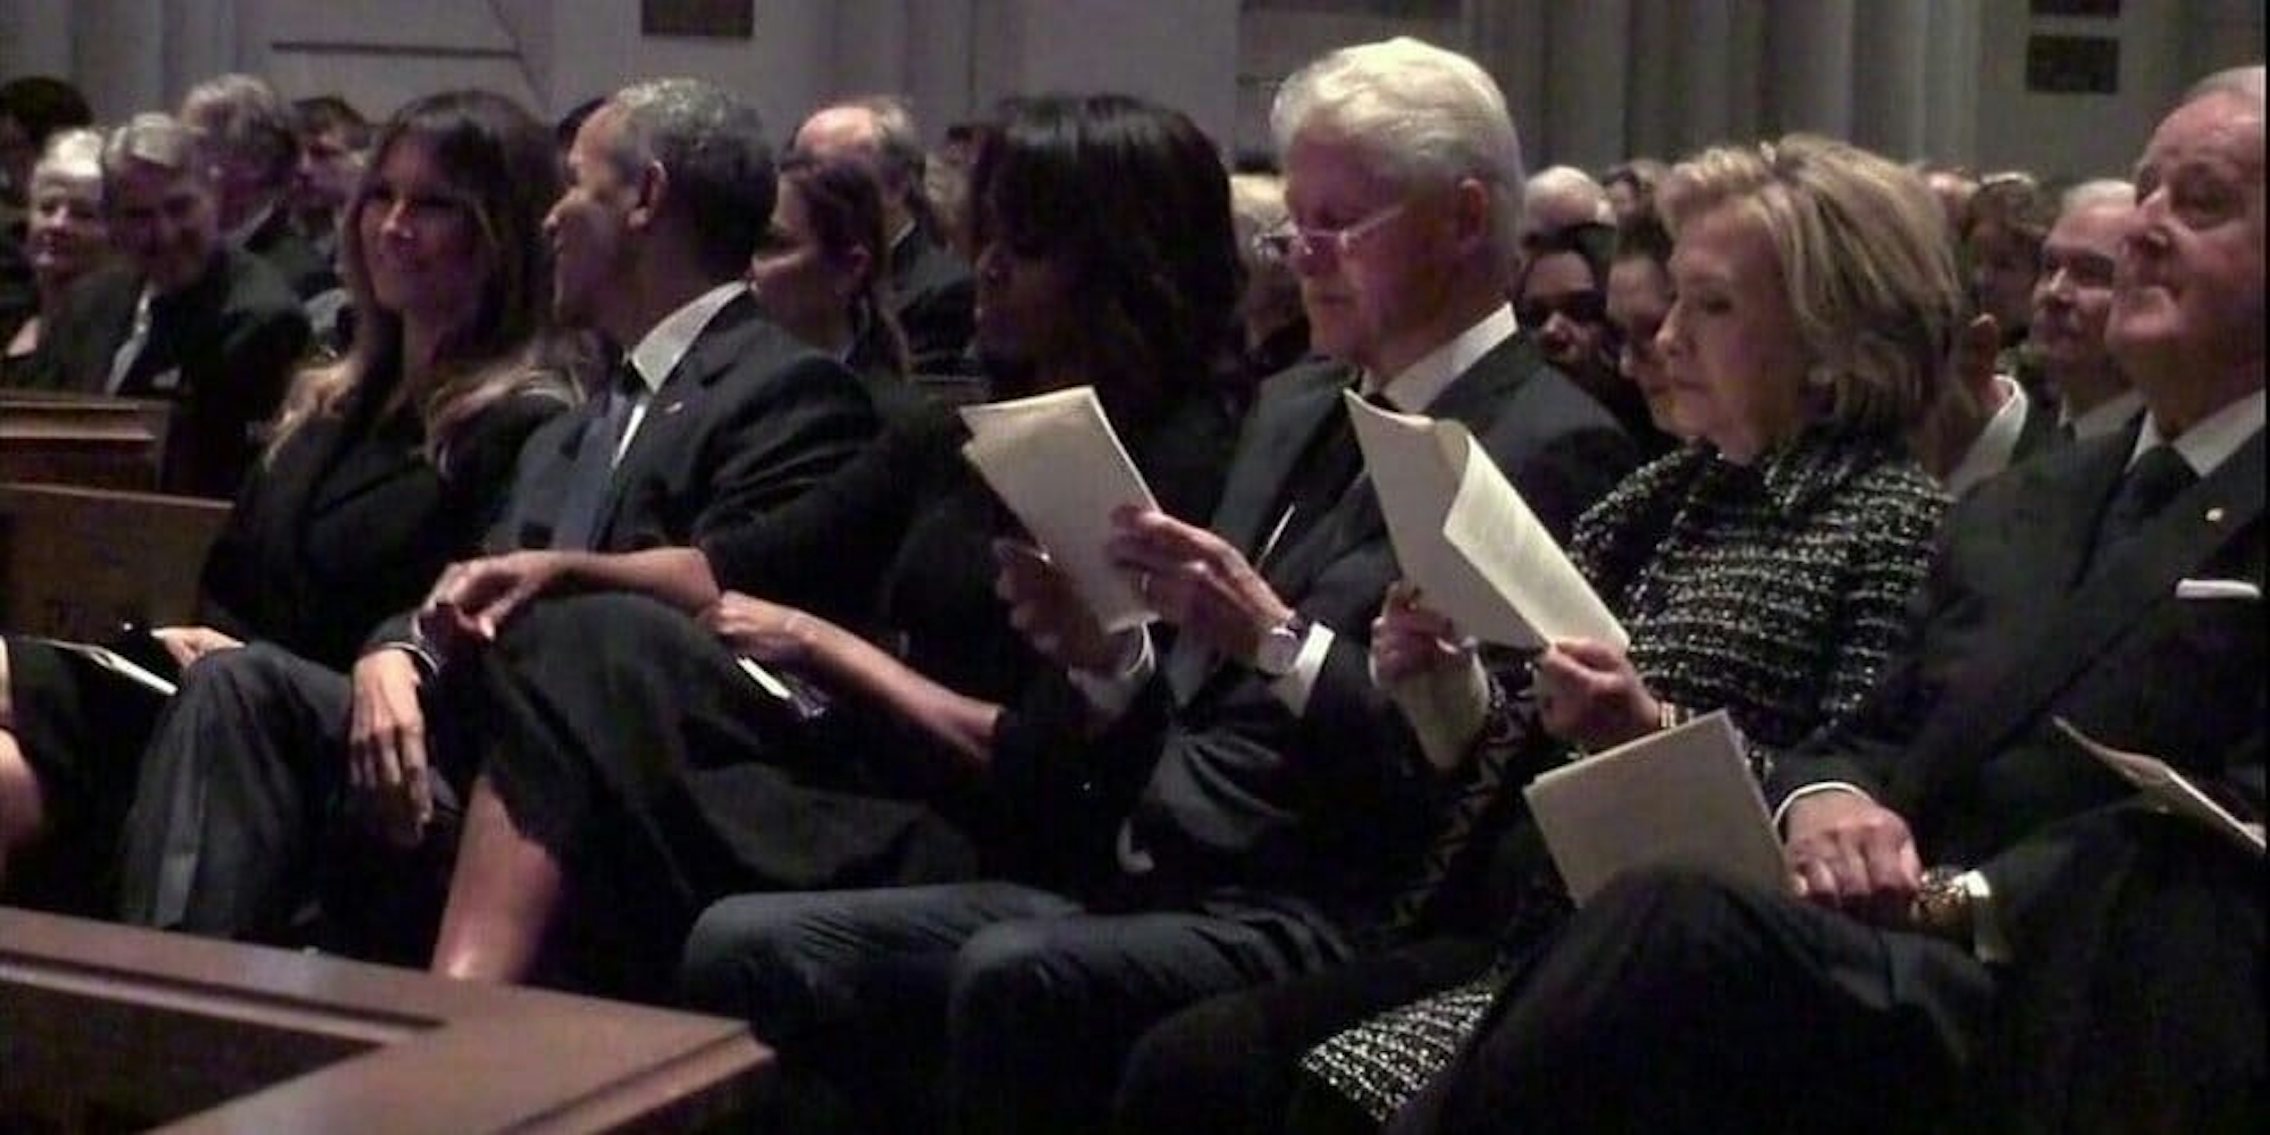 Melania Trump sits next to Barack Obama at Barbara Bush's funeral